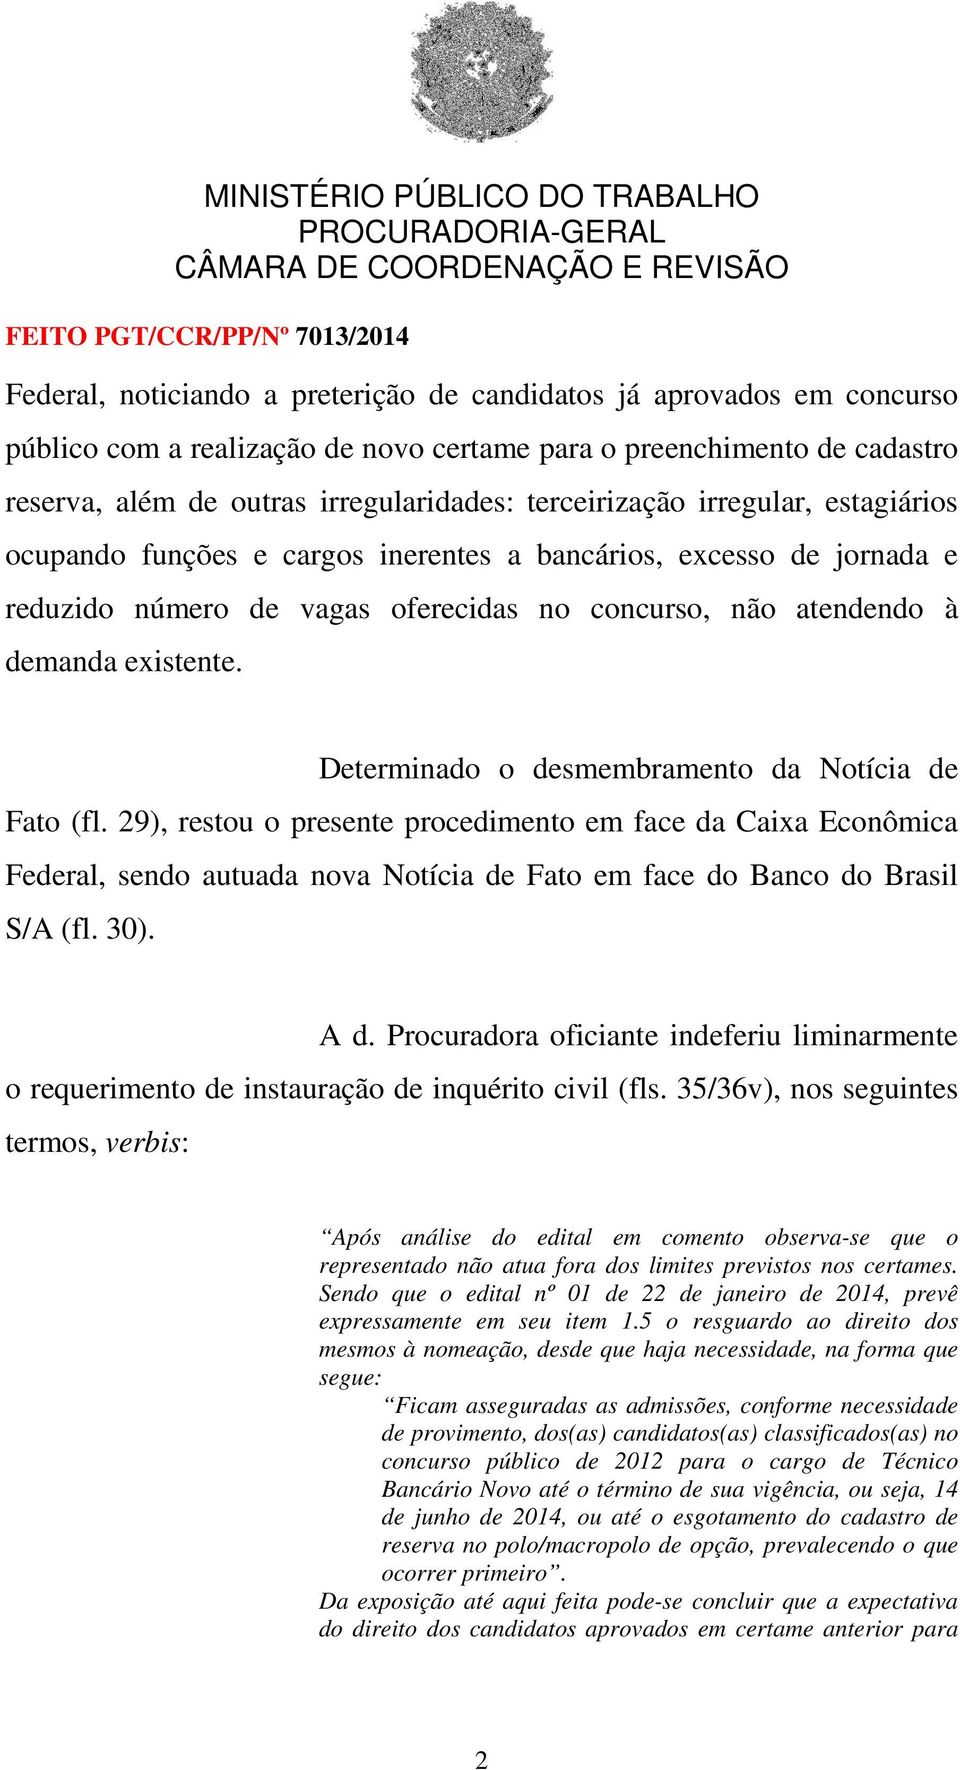 Determinado o desmembramento da Notícia de Fato (fl. 29), restou o presente procedimento em face da Caixa Econômica Federal, sendo autuada nova Notícia de Fato em face do Banco do Brasil S/A (fl. 30).